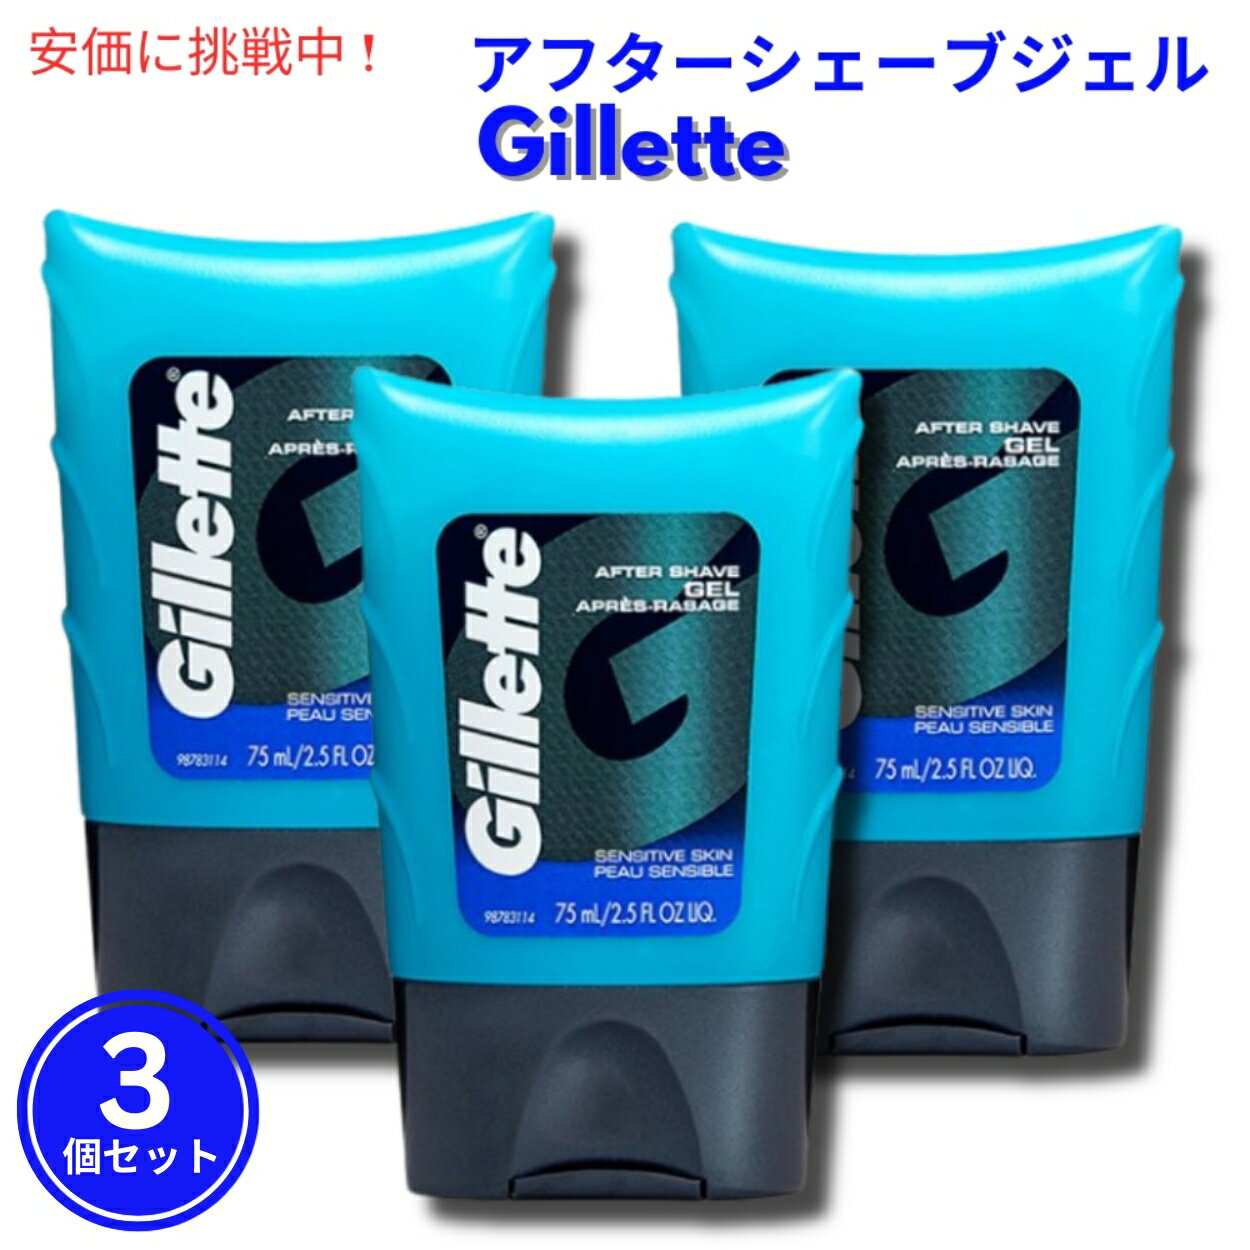 【3個セット】Gillette Aftershave Gel for Men Light Fragrance 2.5 oz 敏感肌用 ライトフレグランス ジレット アフ…